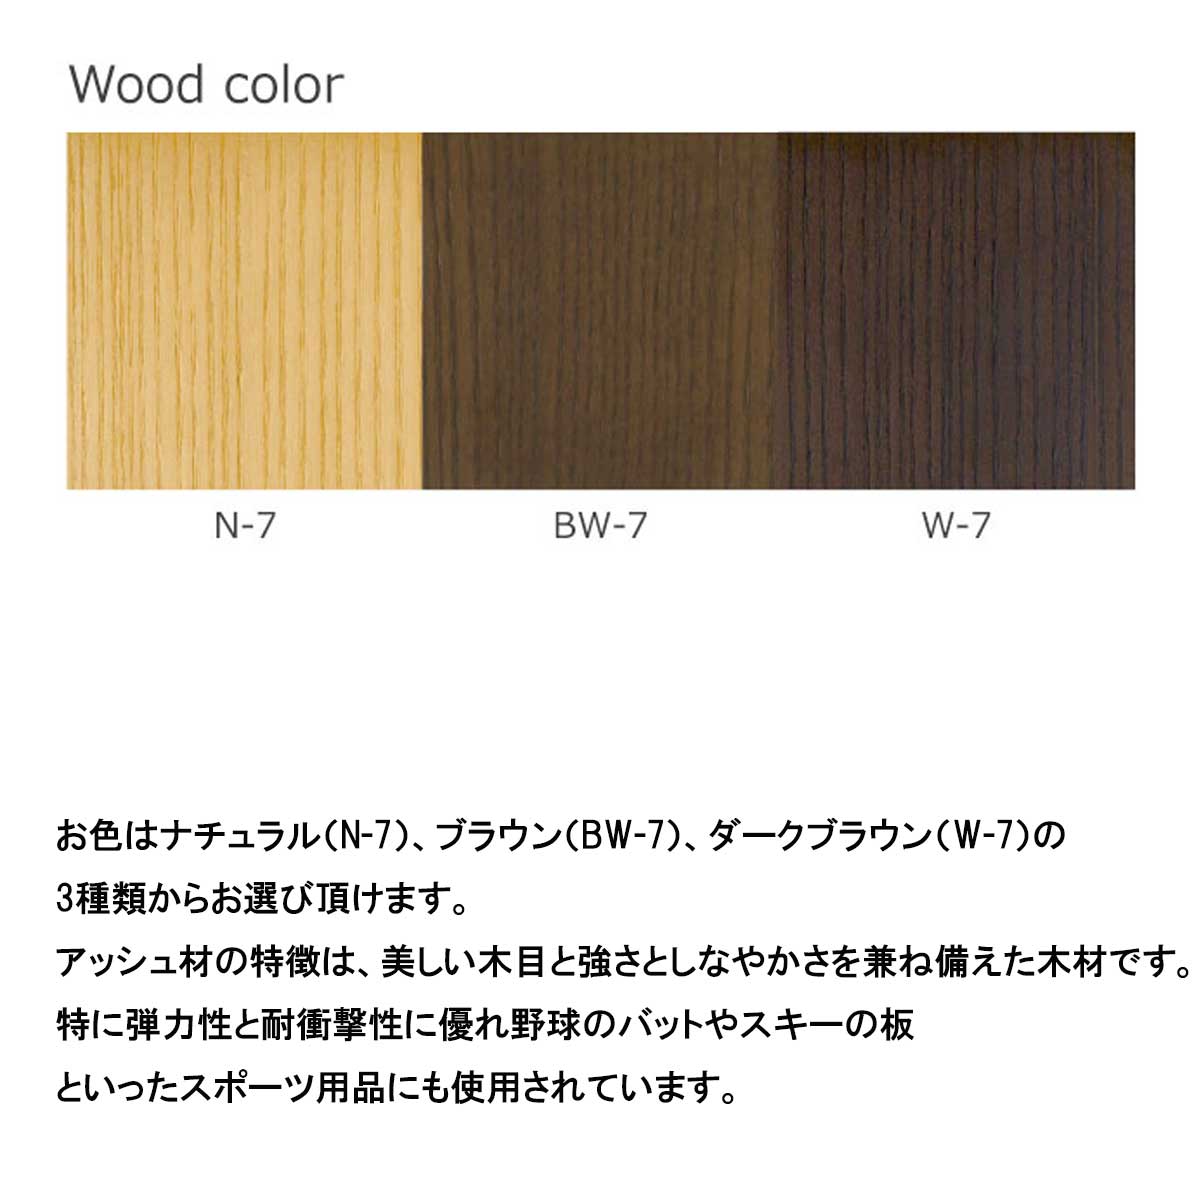 幅150センチ2人掛けソファー「ホルン」は、脚はアッシュ材にTXLウレタン塗装でお色はナチュラル（N-7）、ブラウン（BW-7）、ダークブラウン（W-7）の3種類からお選び頂けます。